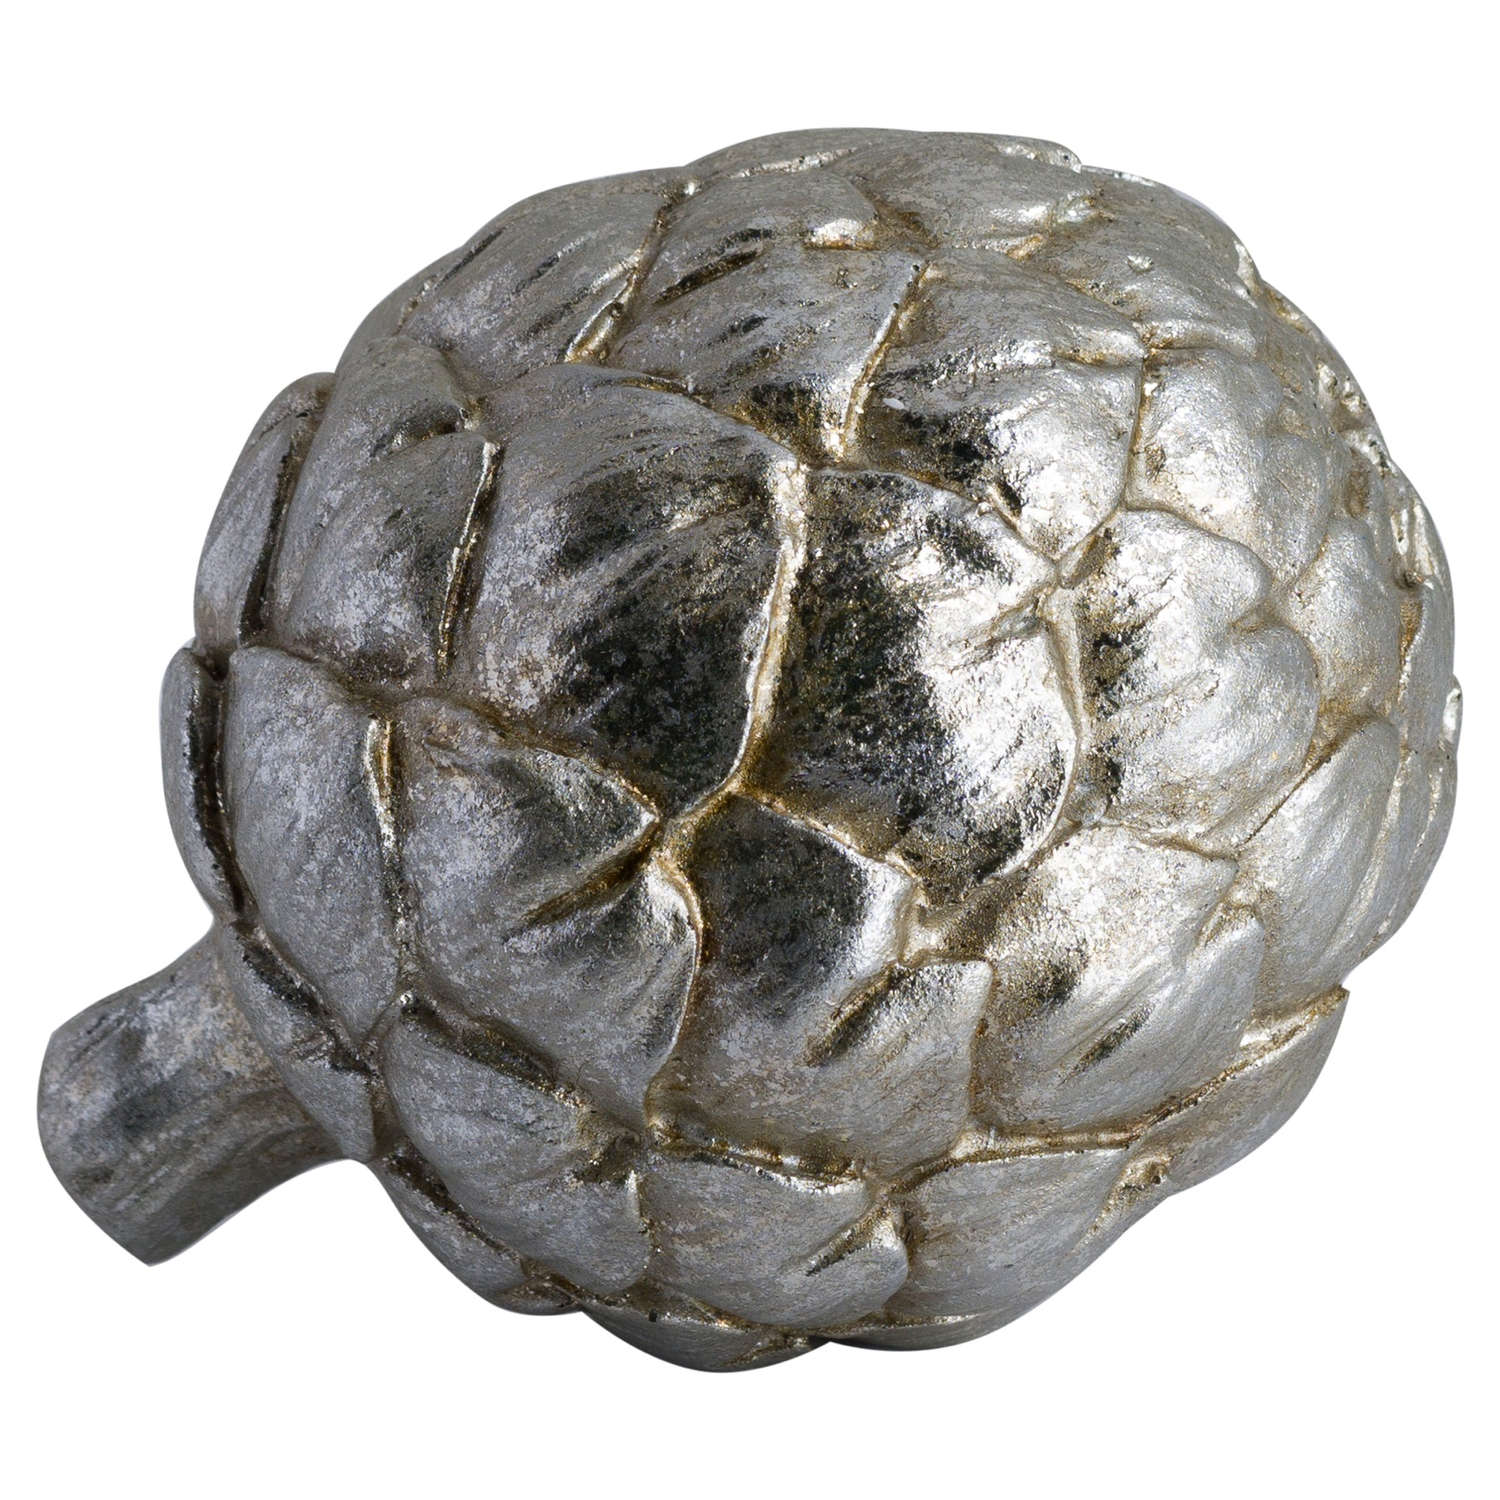 Silver Artichoke Decoration - Image 1